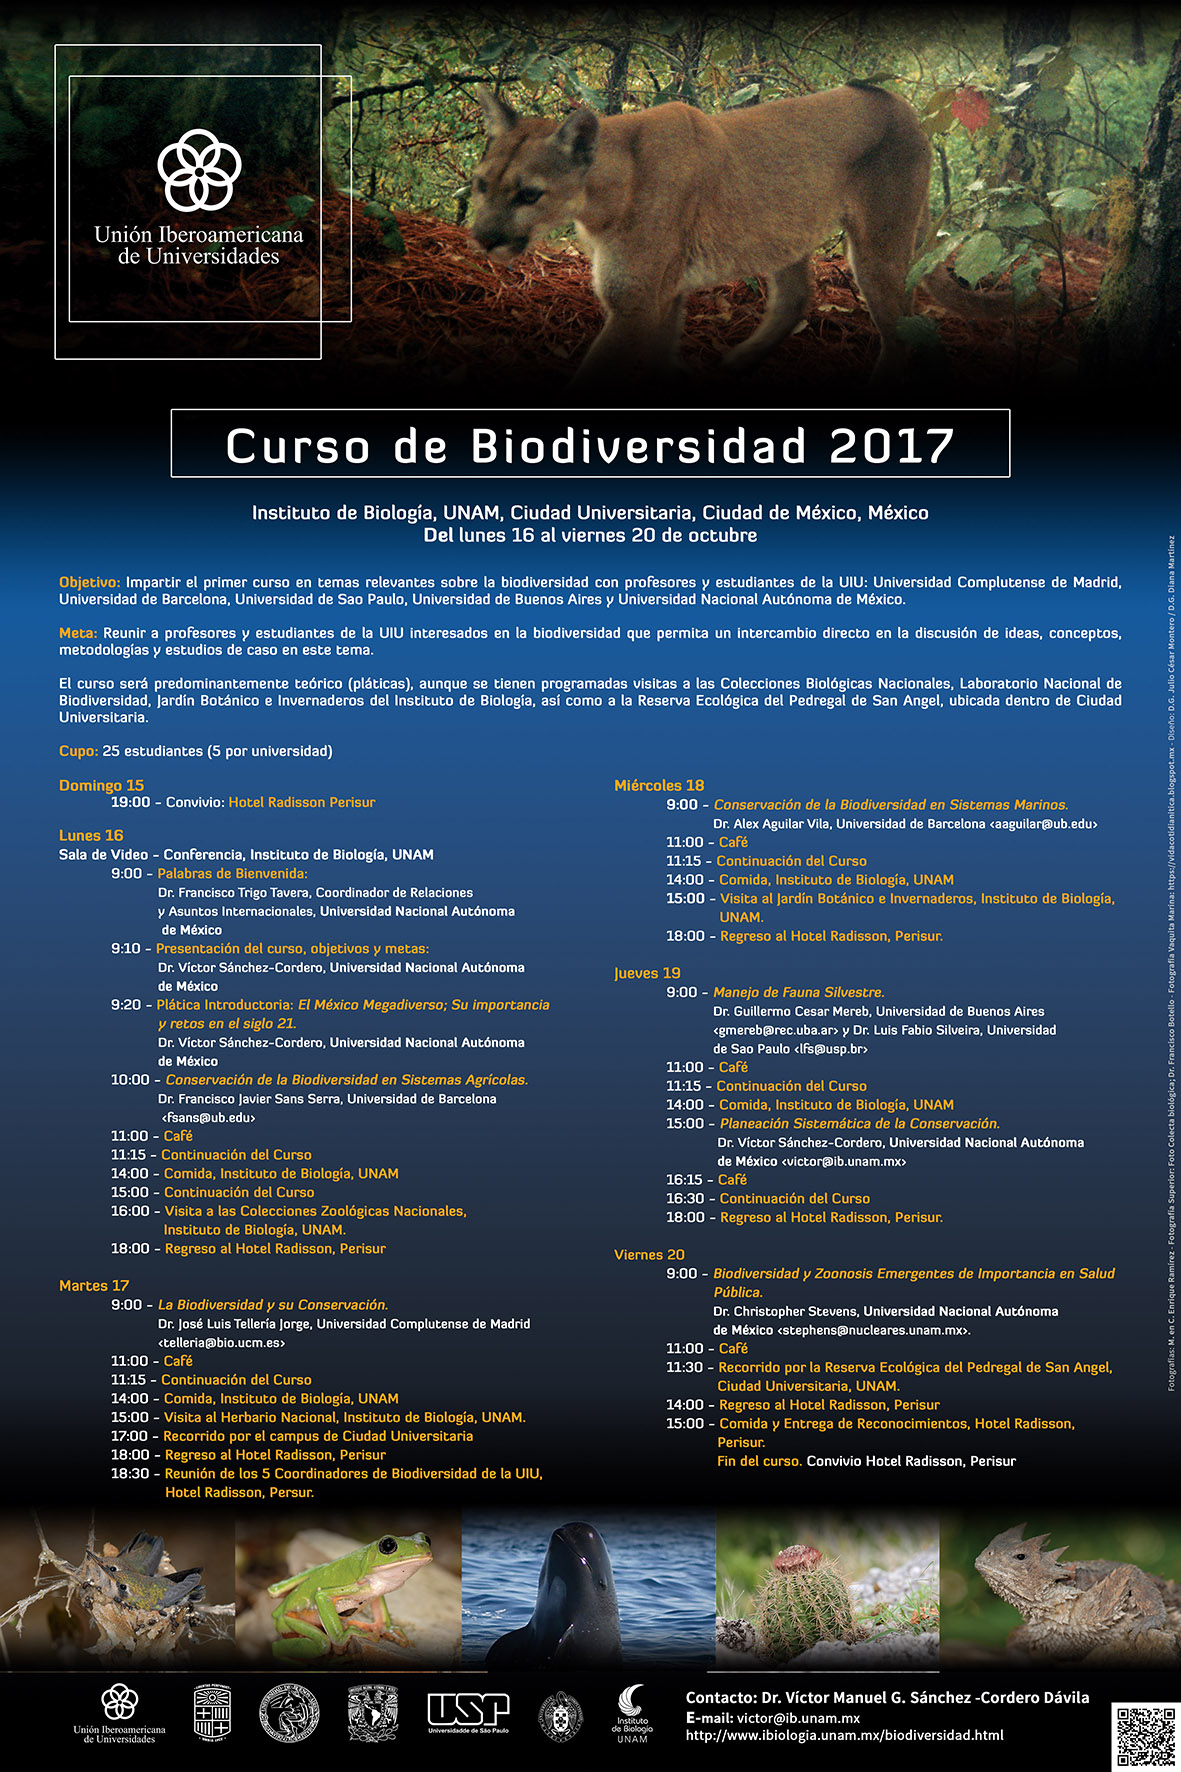 IRBio-UB participa en el curso de Biodiversidad organizado por Union Iberoamericana de Universidades